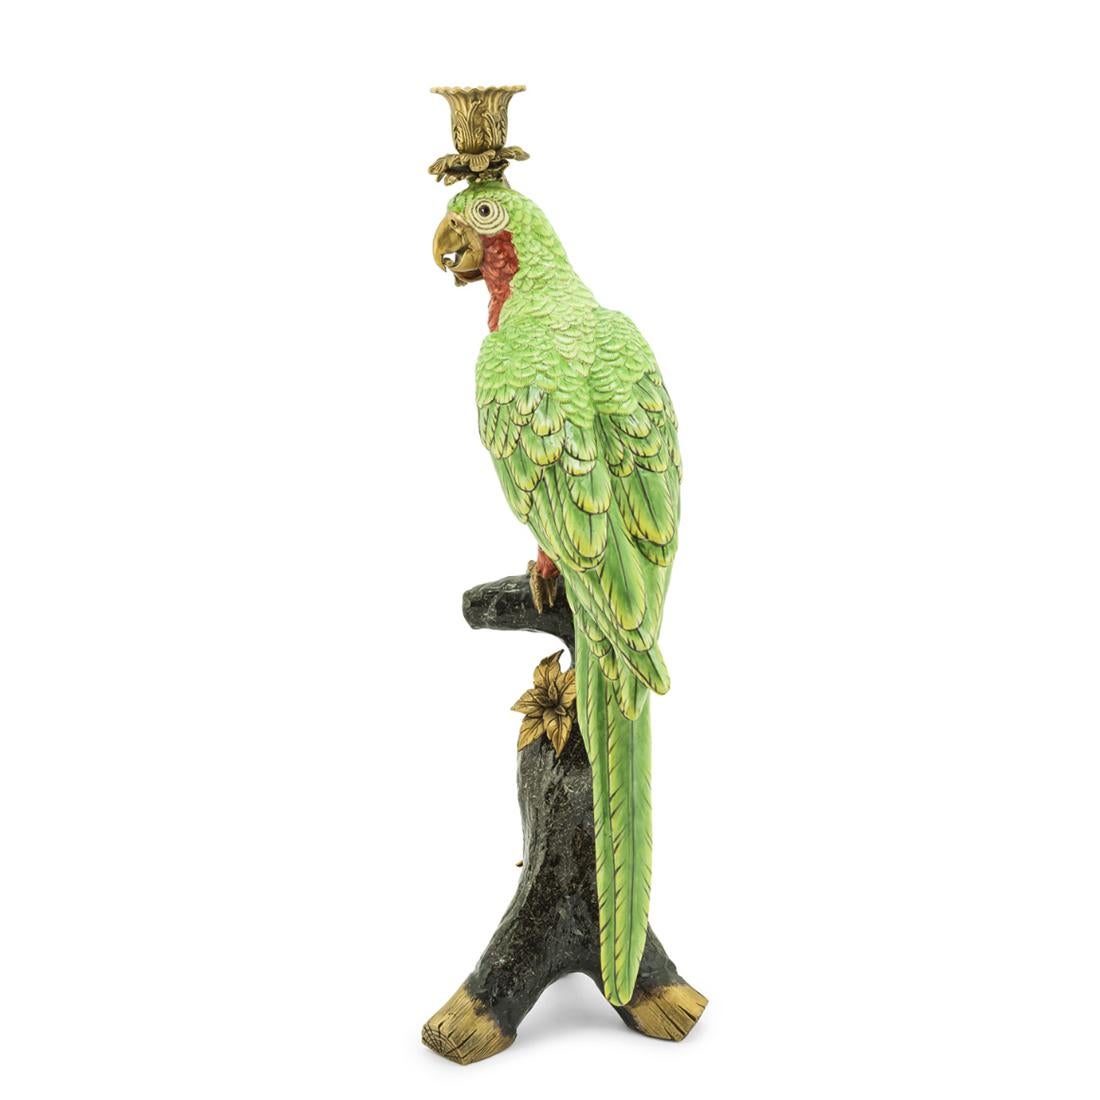 Bougeoir sculpture perroquet vert en
Porcelaine peinte à la main avec des détails en laiton.
Pour 1 bougie. Bougie non incluse.